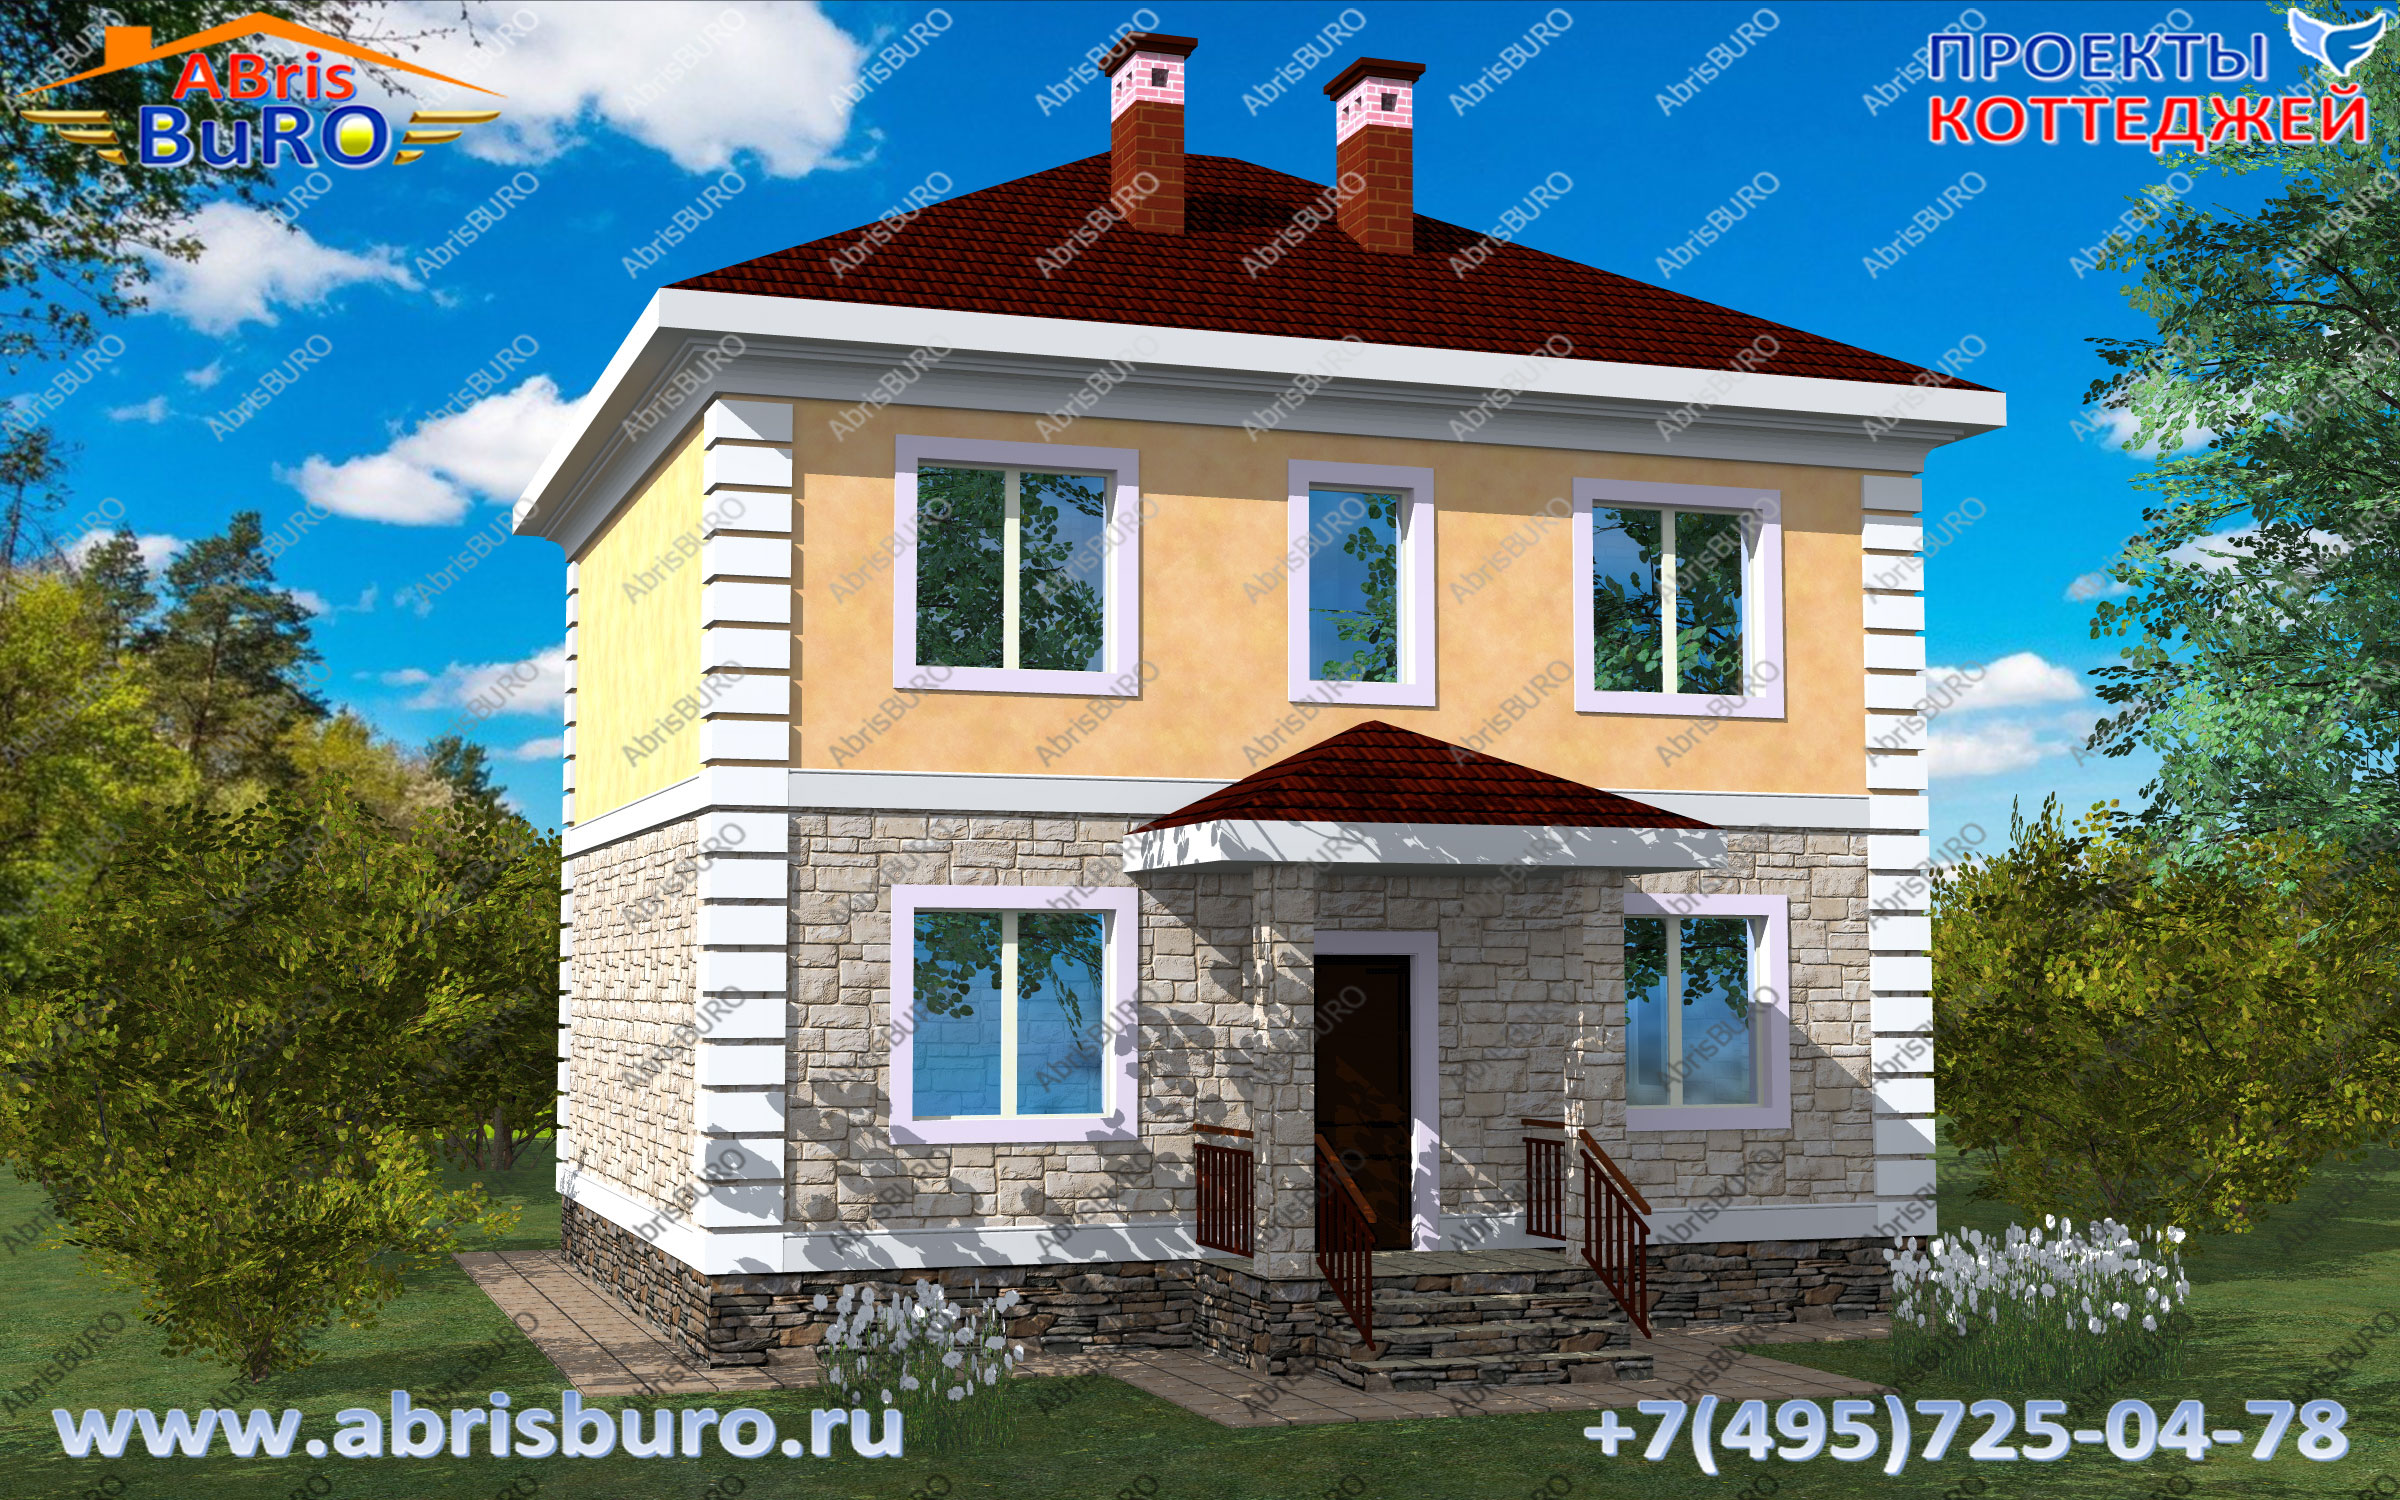 Любимые проекты домов и коттеджей на сайте www.abrisburo.ru